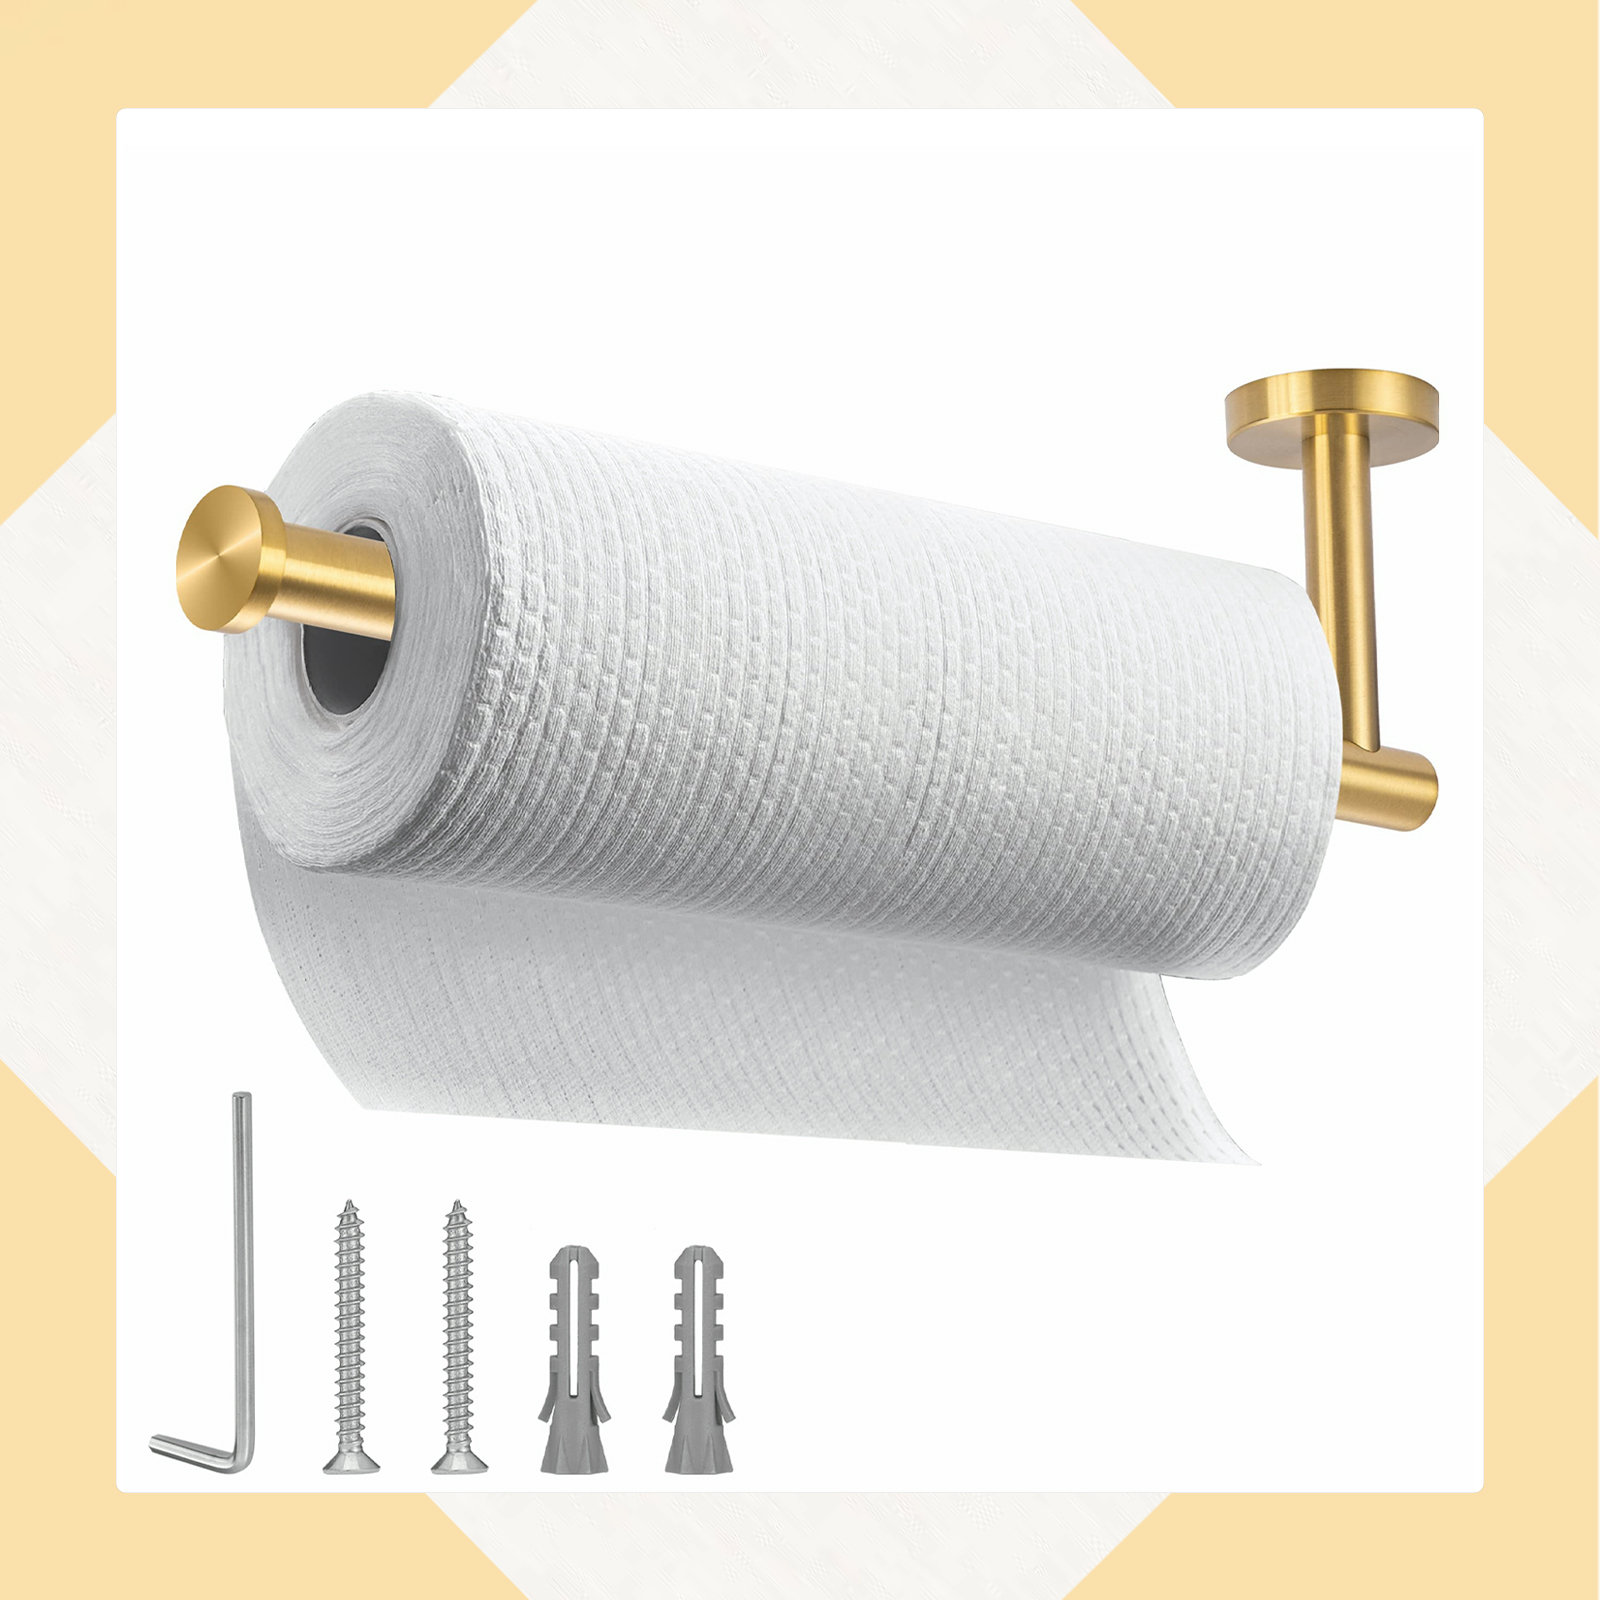 https://assets.wfcdn.com/im/41124068/compr-r85/2283/228374851/brushed-gold-paper-towel-holderunder-kitchen-cabi-wall-mount-toilet-paper-holder.jpg